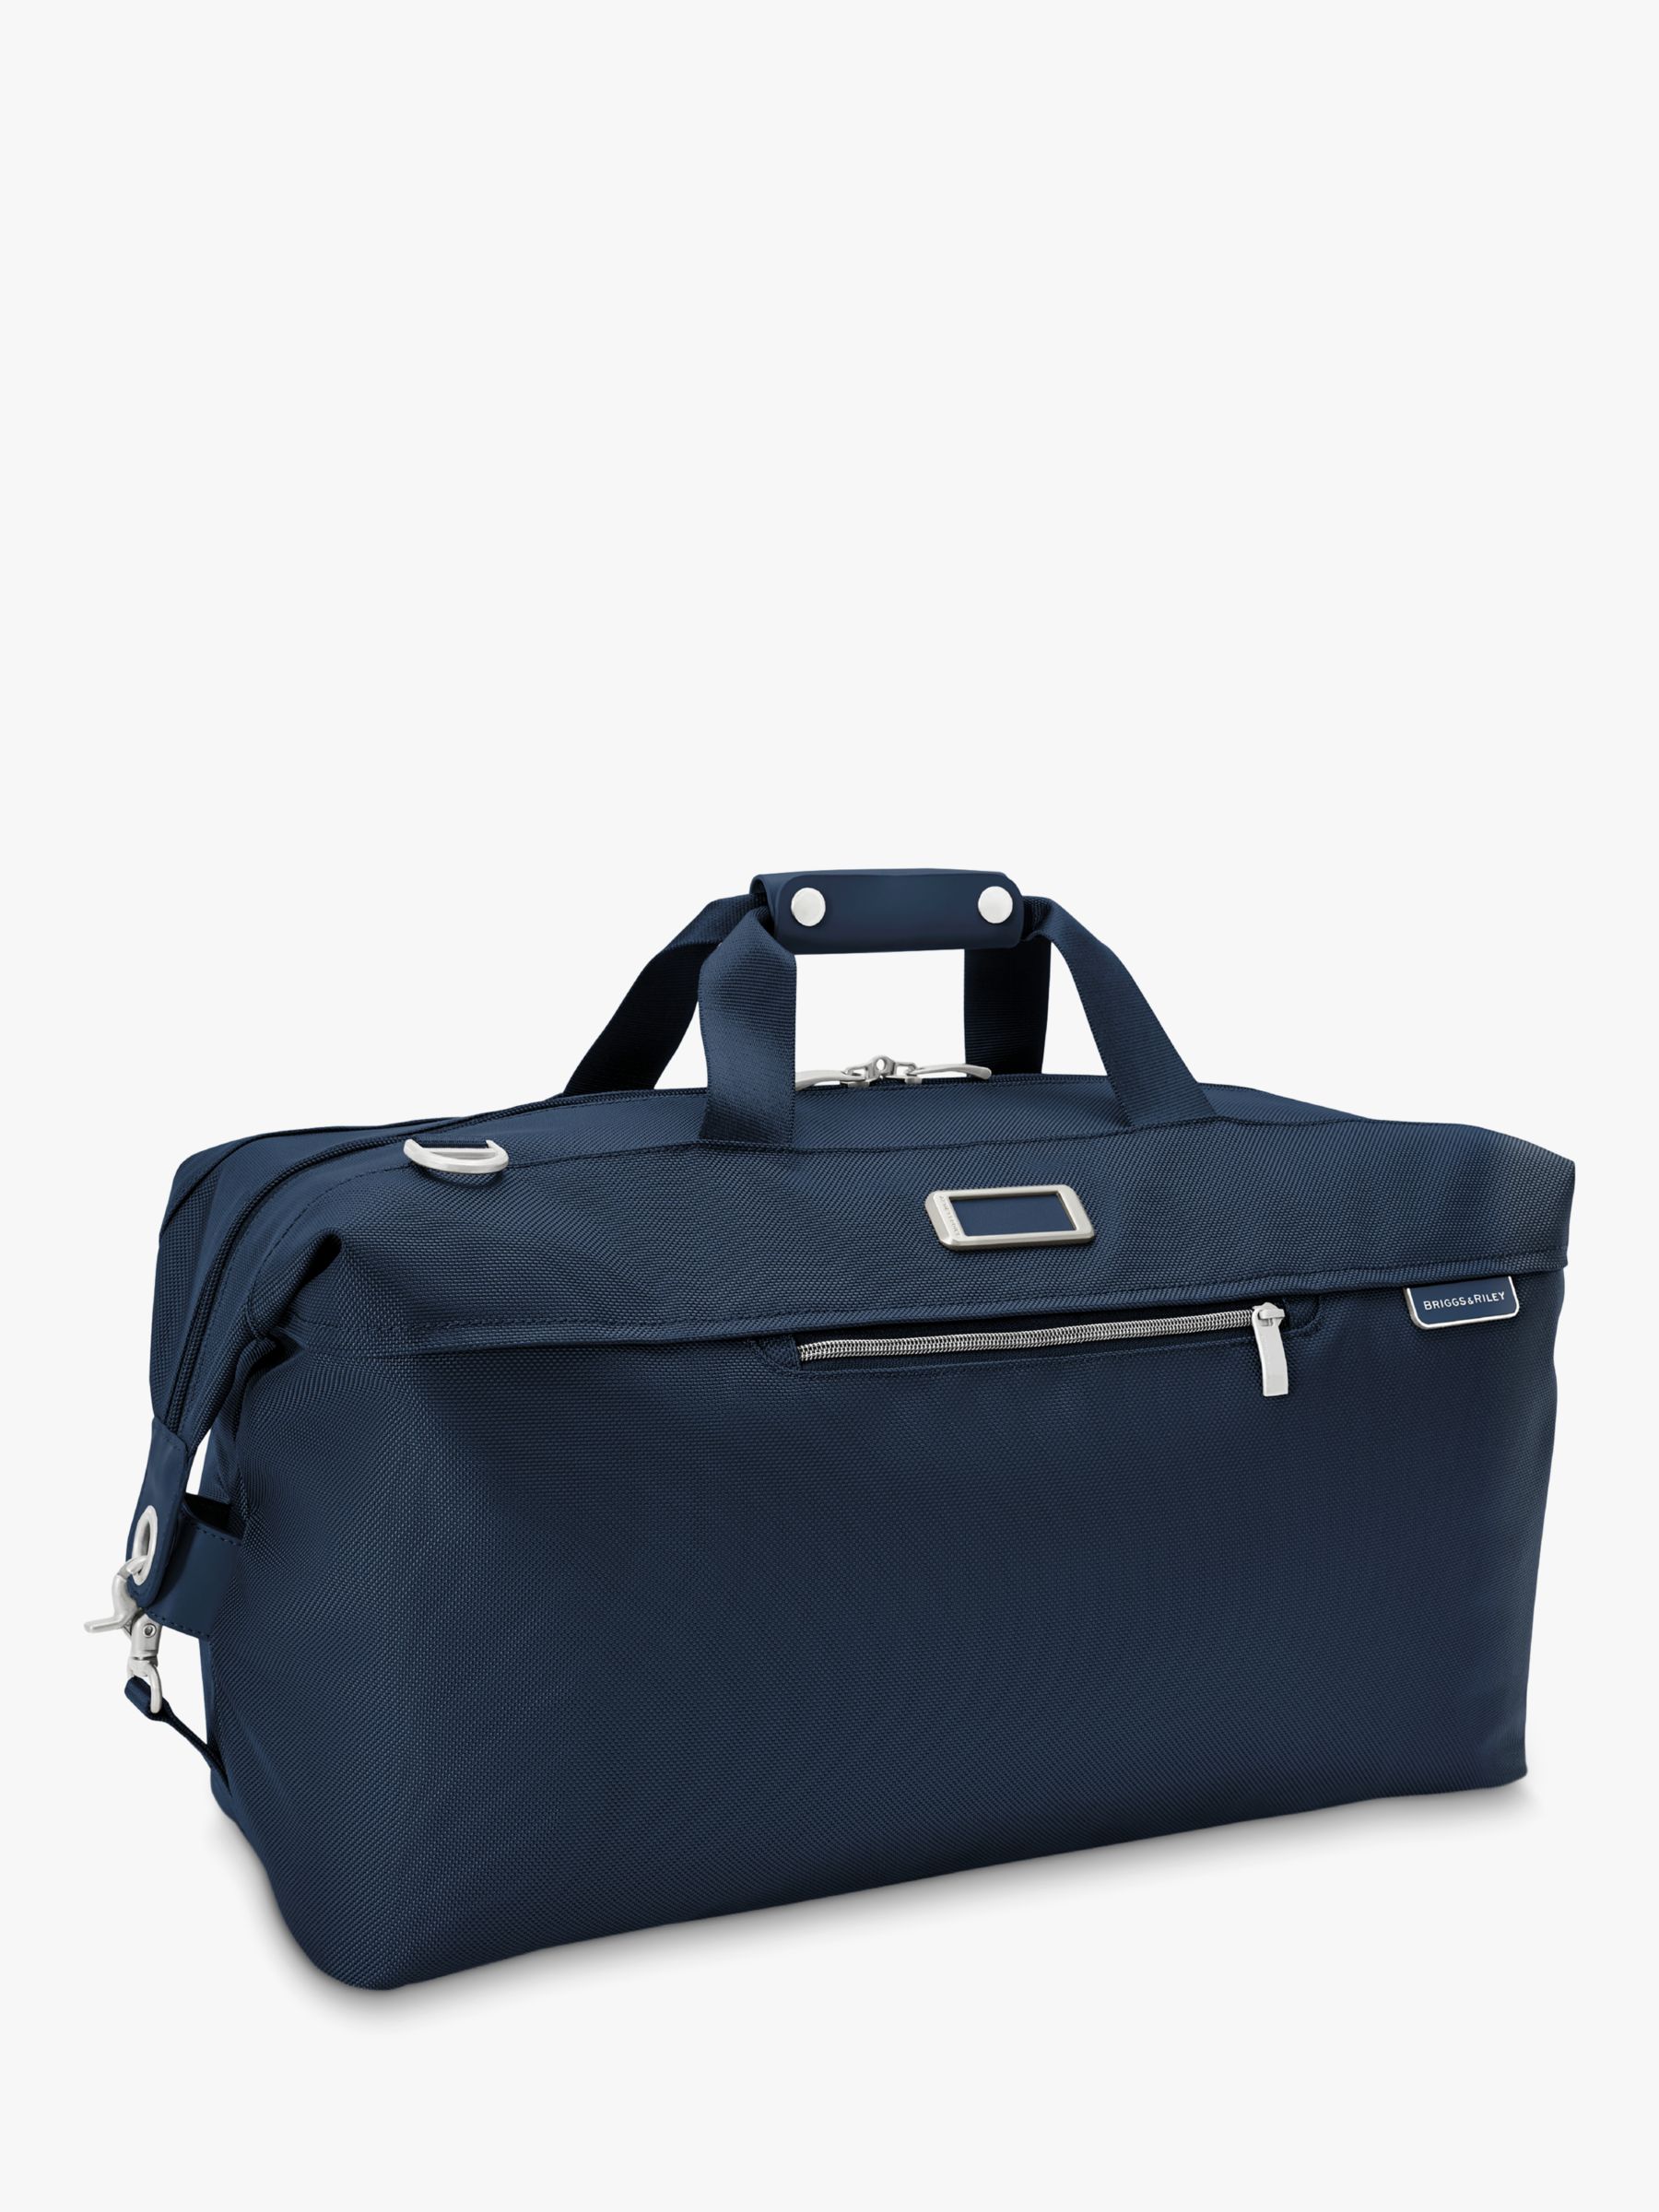 Buy Briggs & Riley Baseline Weekender Duffle Bag Online at johnlewis.com